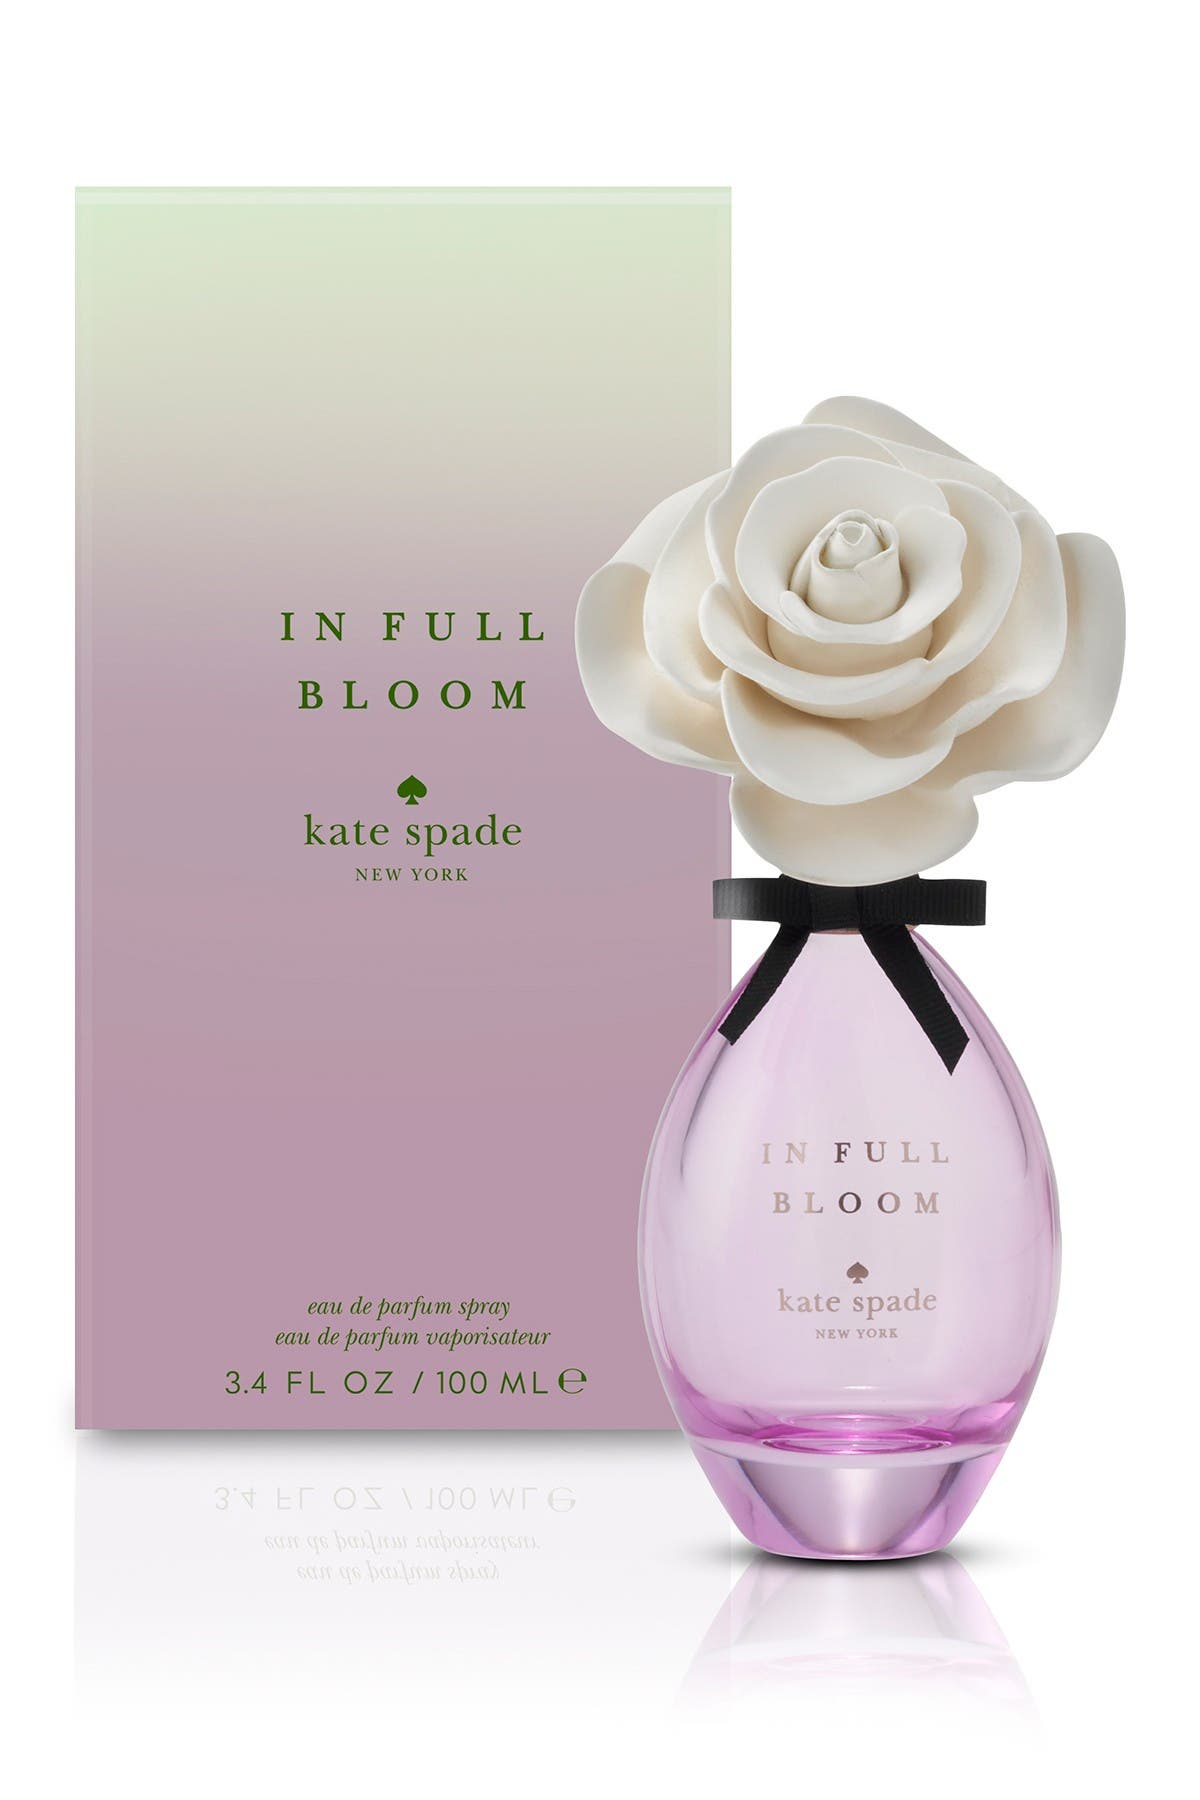 kate spade perfume in full bloom